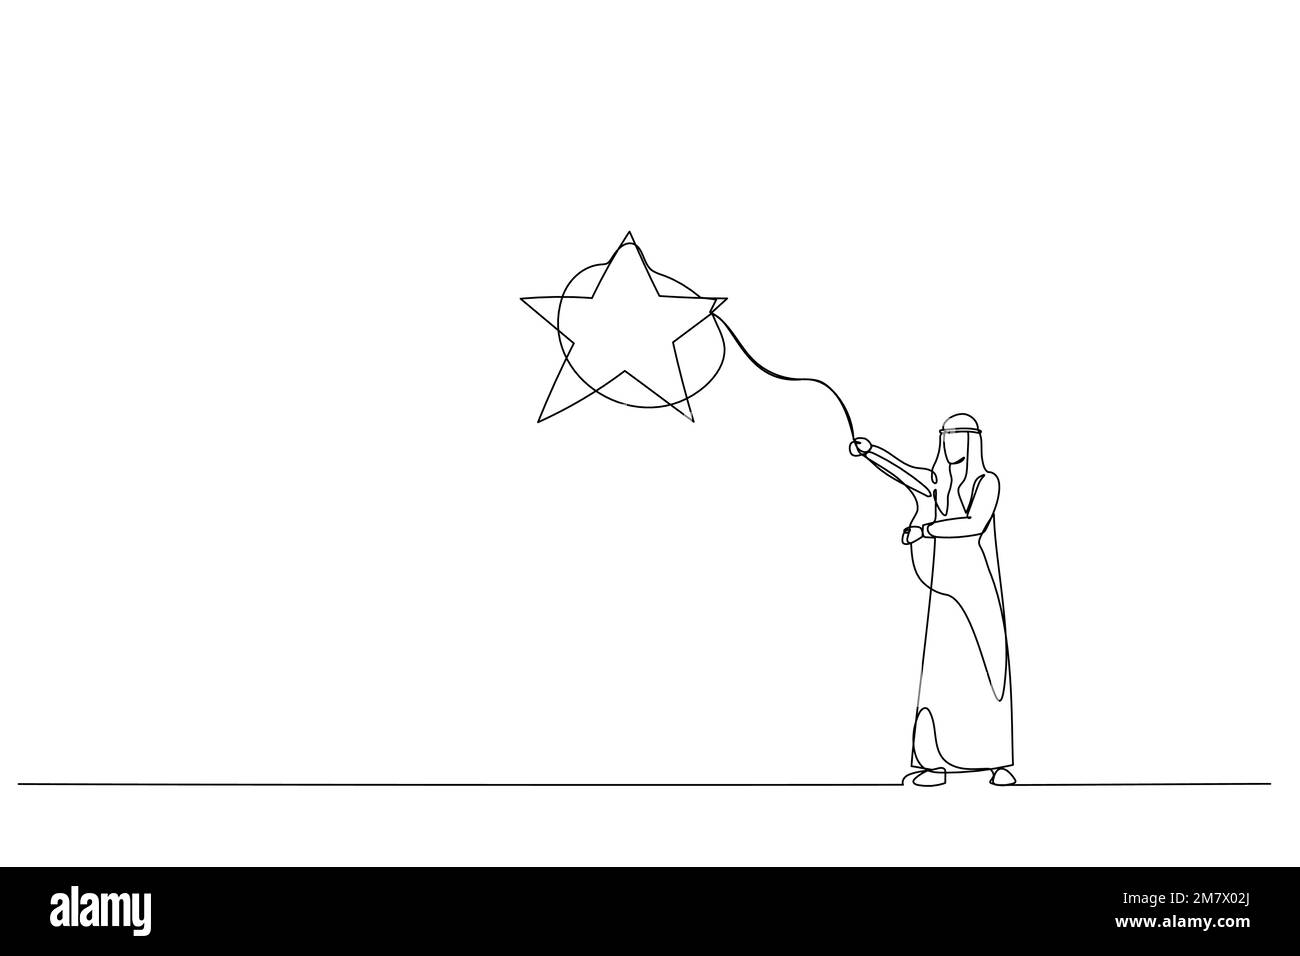 Una estrella para dibujar Imágenes de stock en blanco y negro - Alamy